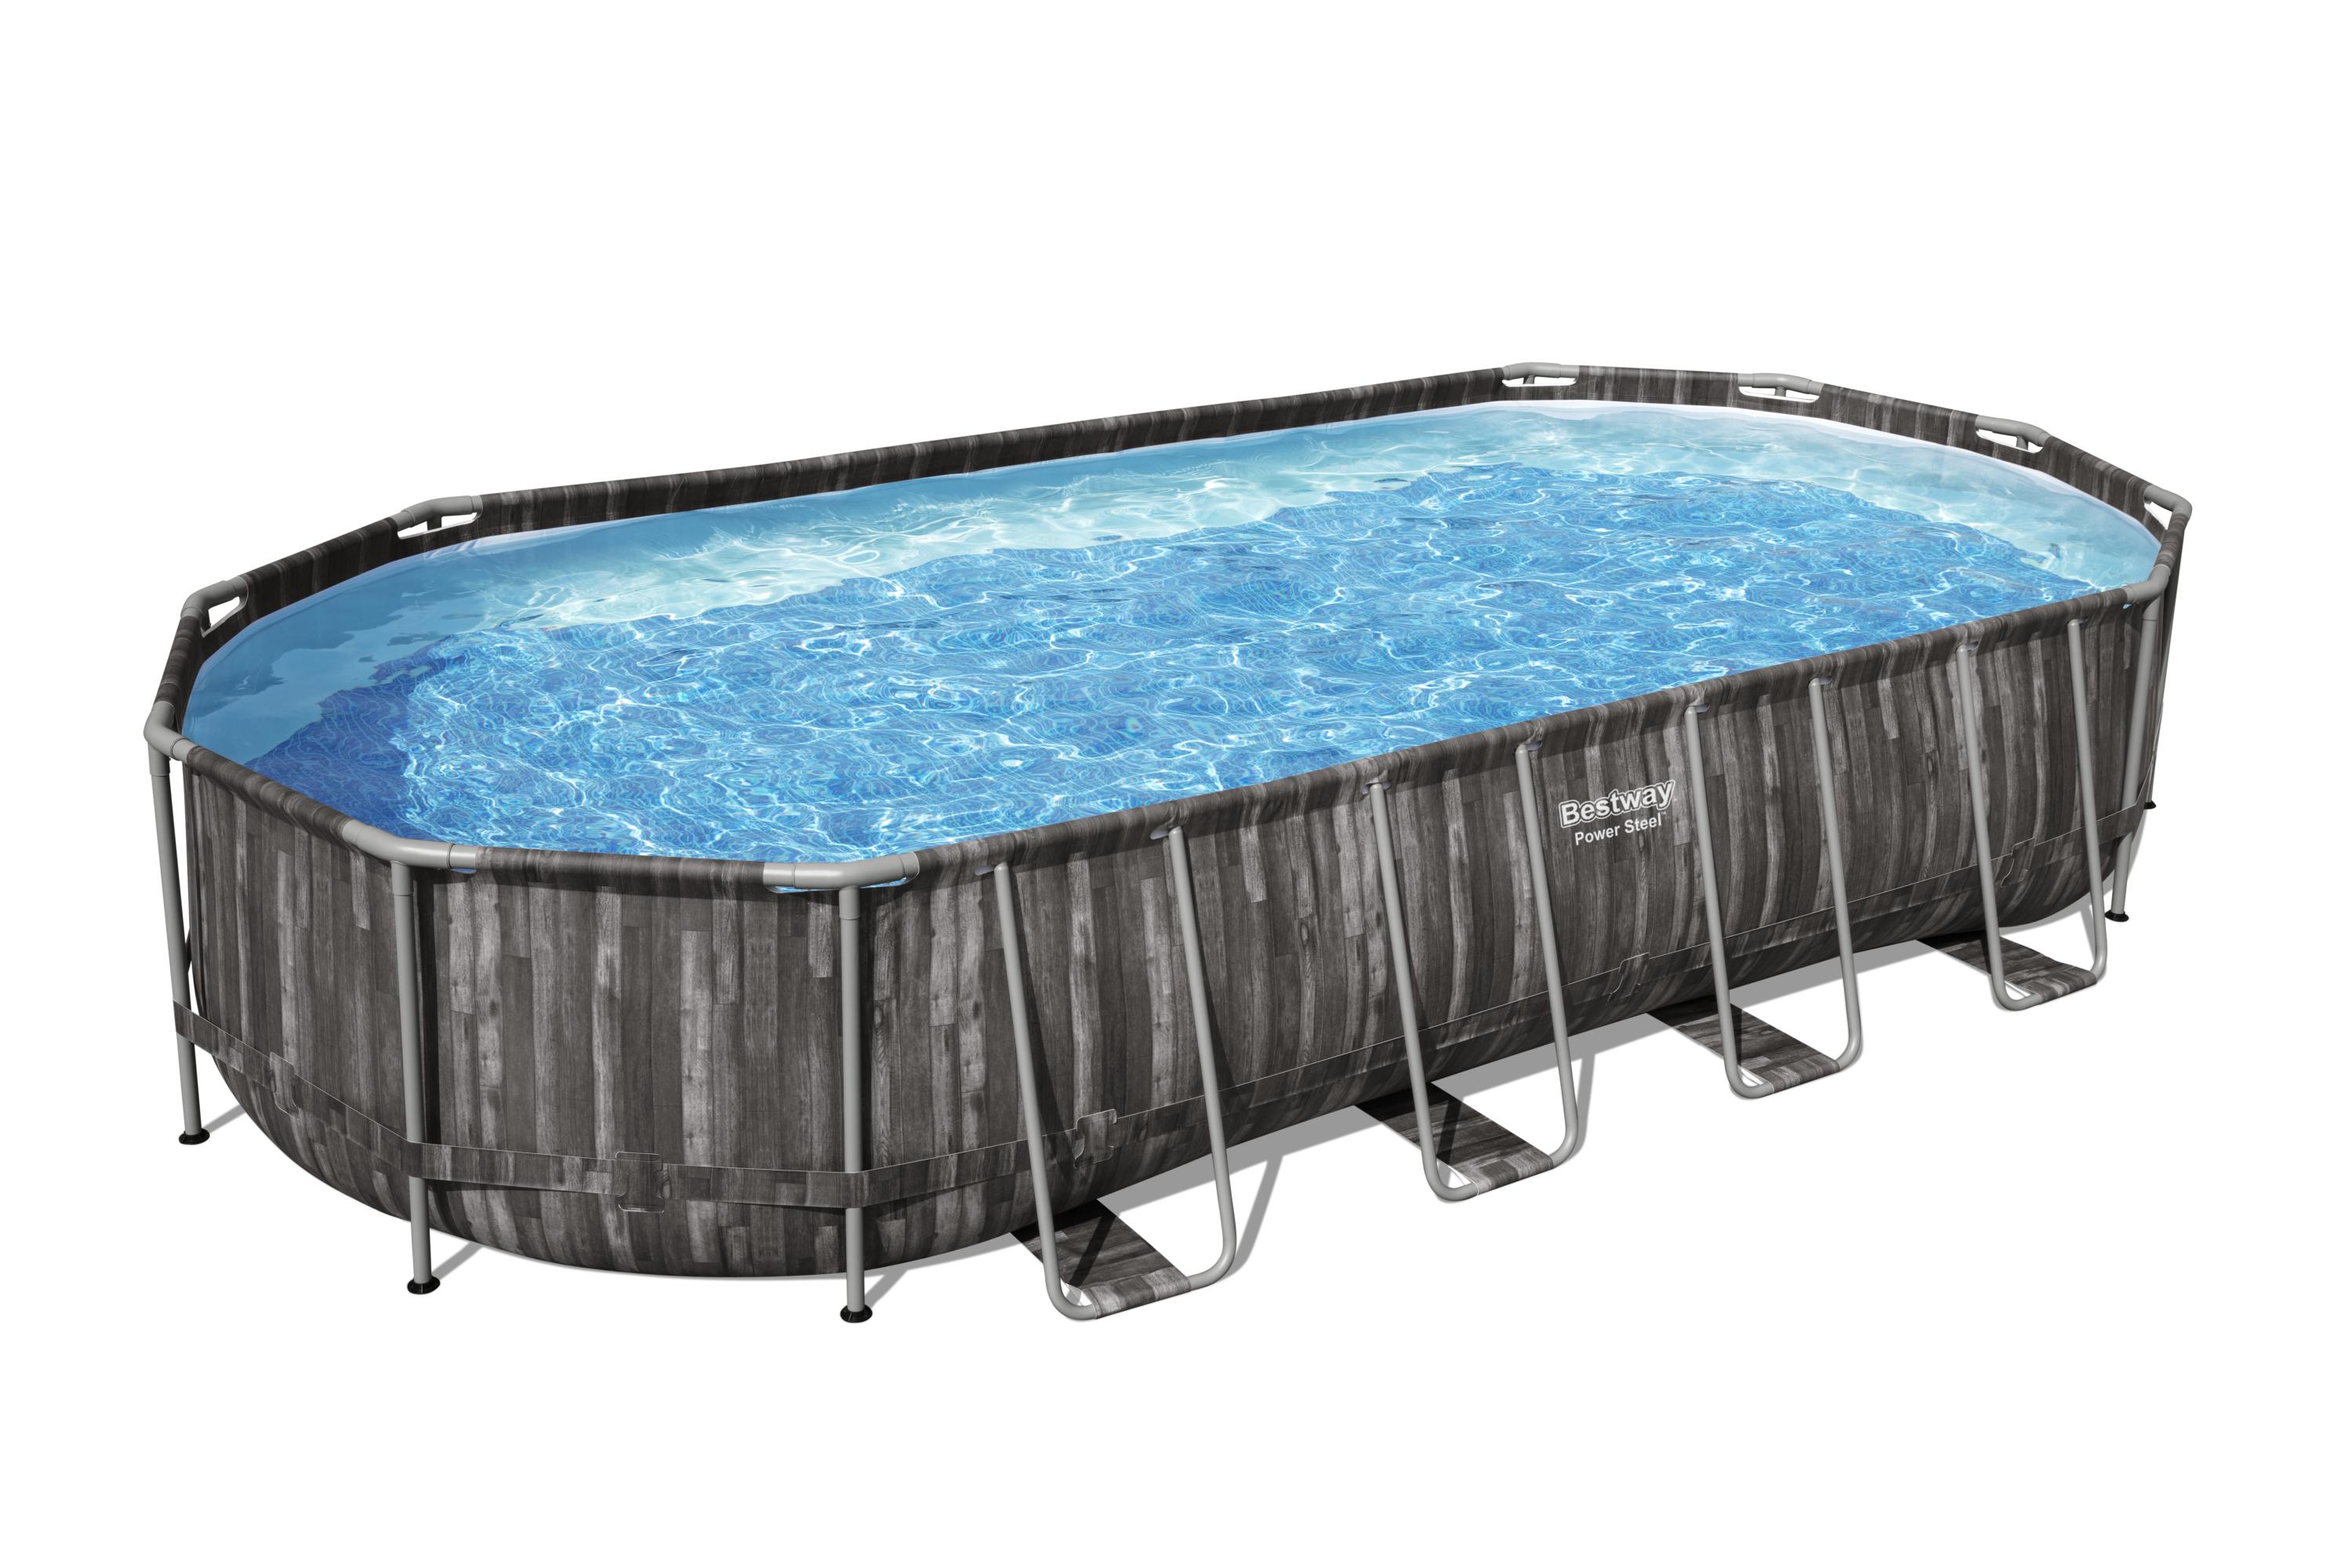 Nadzemní bazén Power Steel™, 732 x 366 x 122 cm, kartušová filtrace 9463 l/hod + příslušenství, Best